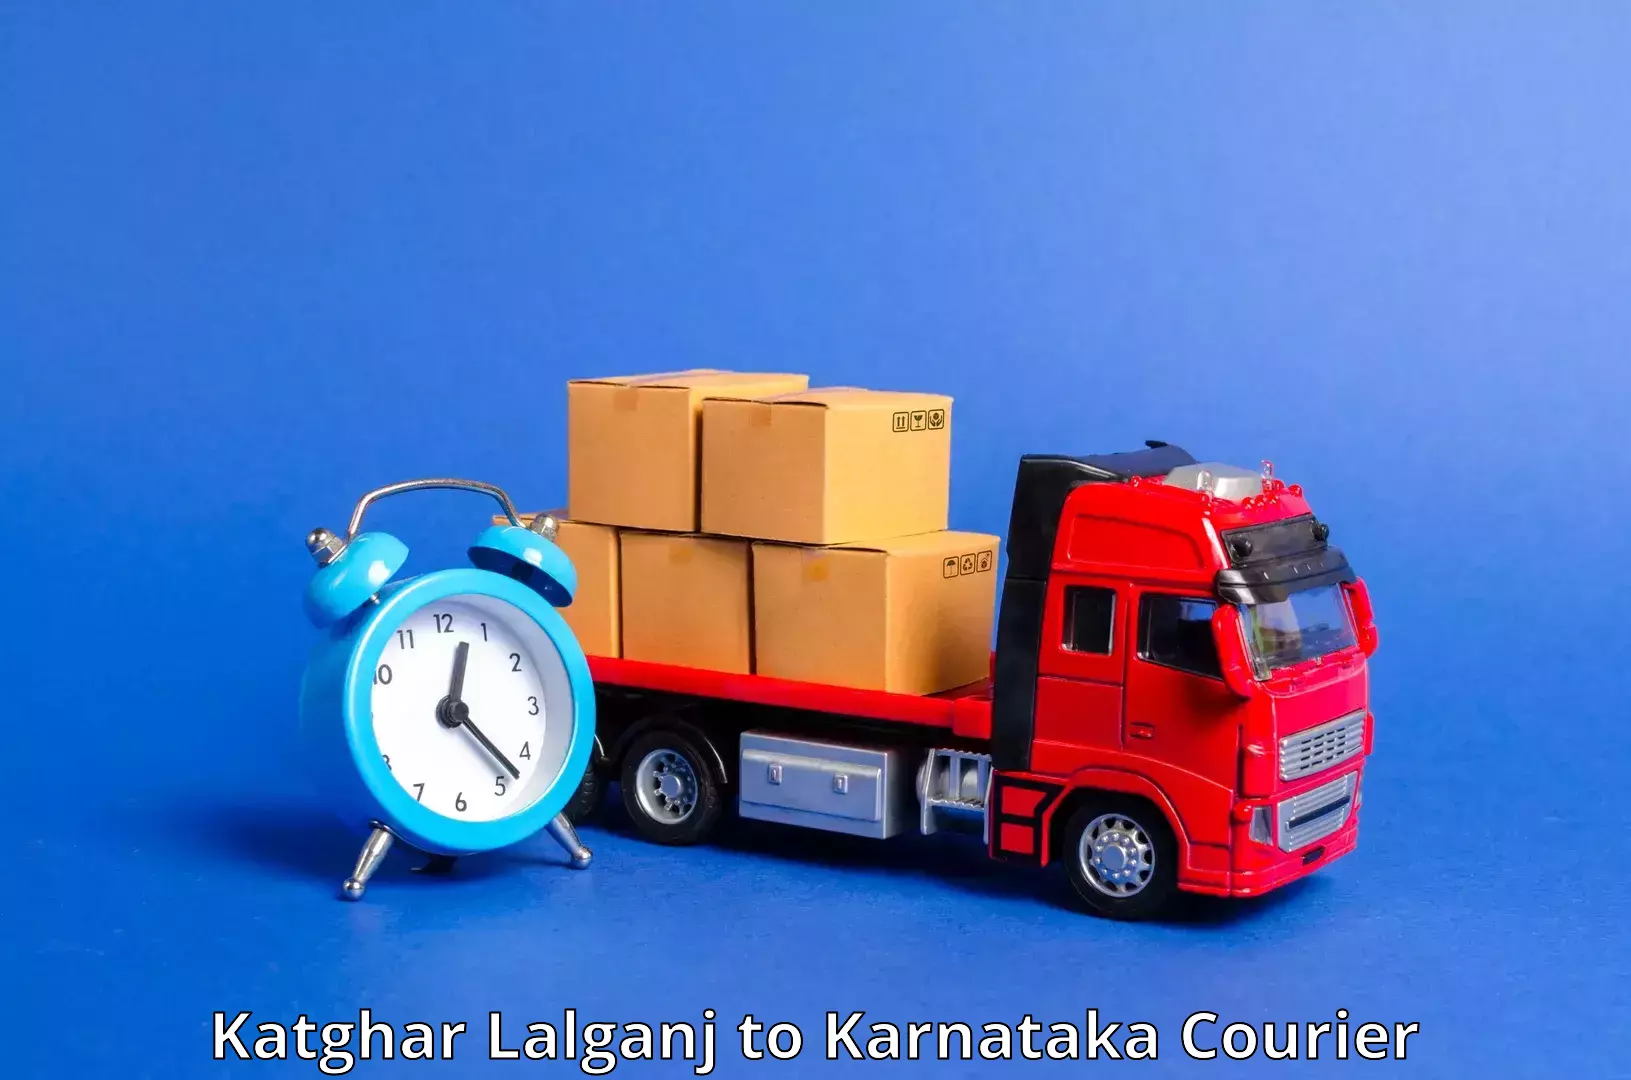 Courier service booking Katghar Lalganj to Laxmeshwar